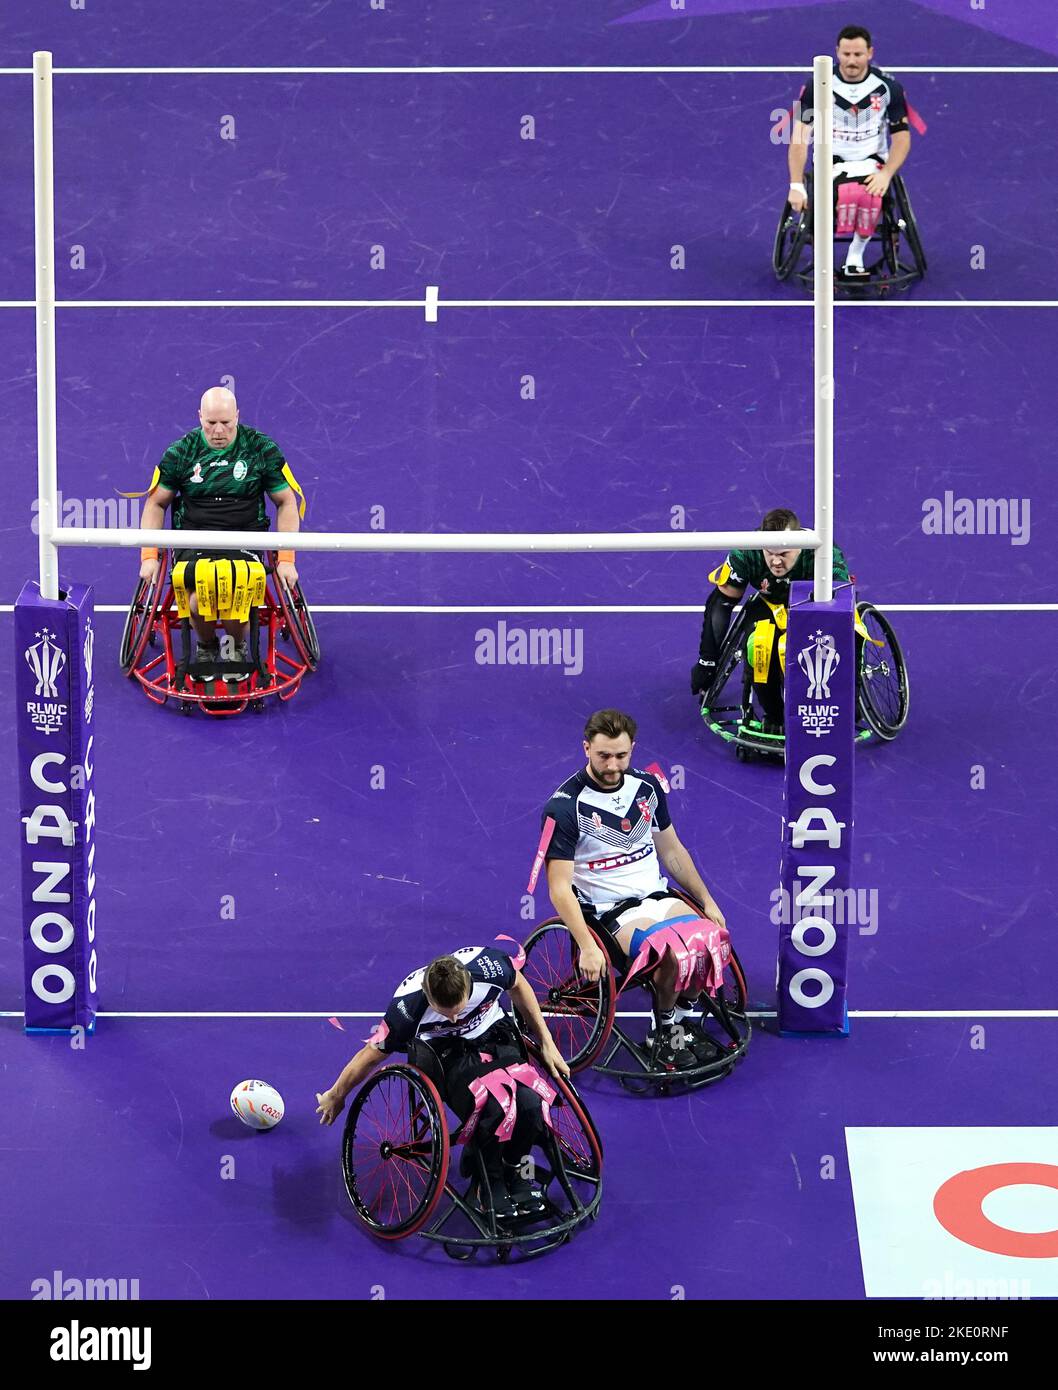 Der Engländer Jack Brown versucht es während des Wheelchair Rugby League World Cup-Spiels Der Gruppe A in der Copper Box Arena in London. Bilddatum: Mittwoch, 9. November 2022. Stockfoto